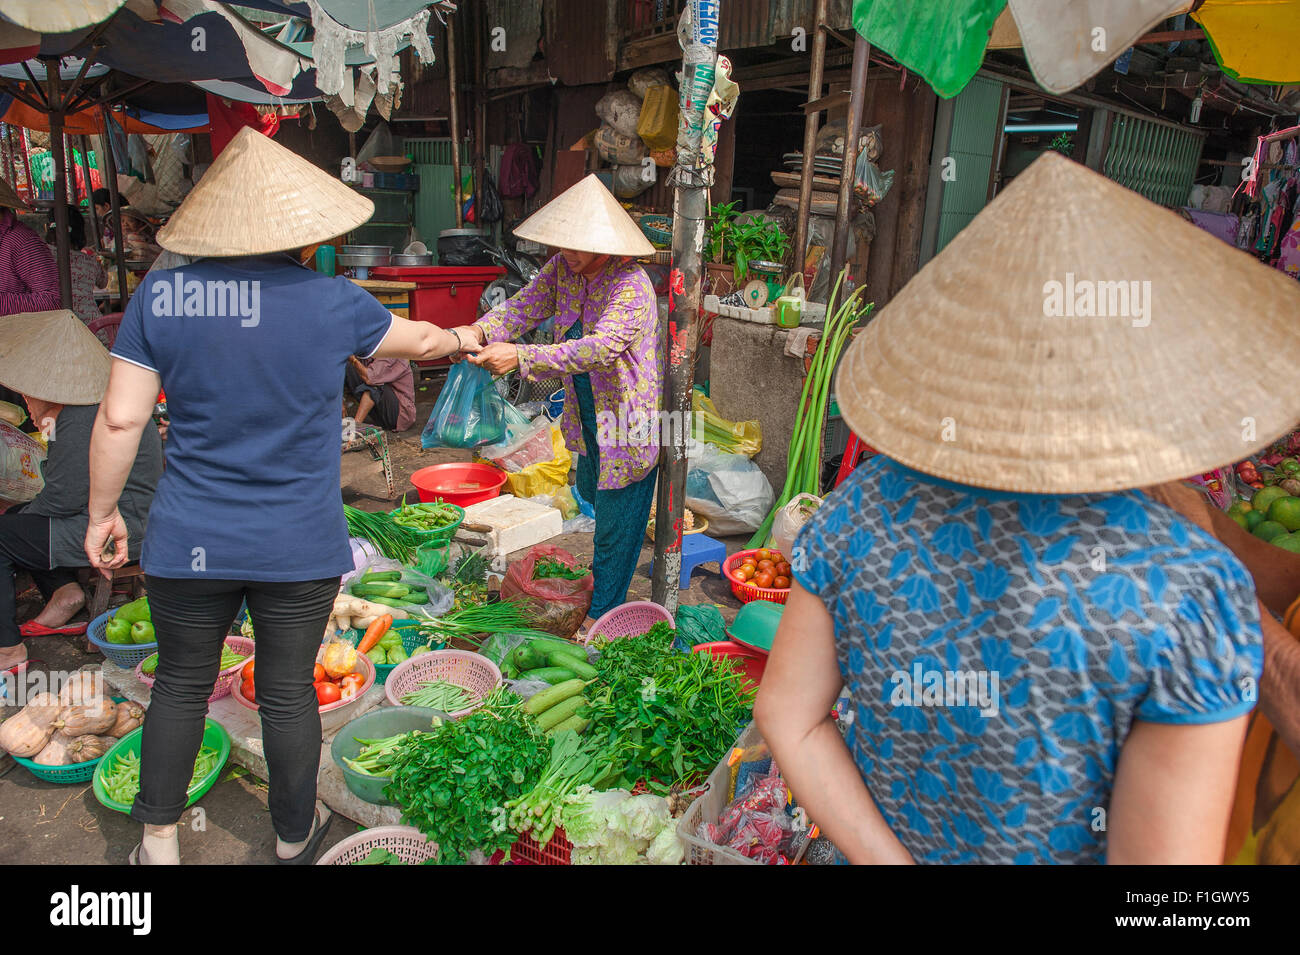 Vietnam shopping femme, une femme boutiques pour les légumes sur un trottoir en décrochage, Cholon, le marché Binh Tay, Ho Chi Minh Ville, Saigon, Hanoi, Vietnam. Banque D'Images